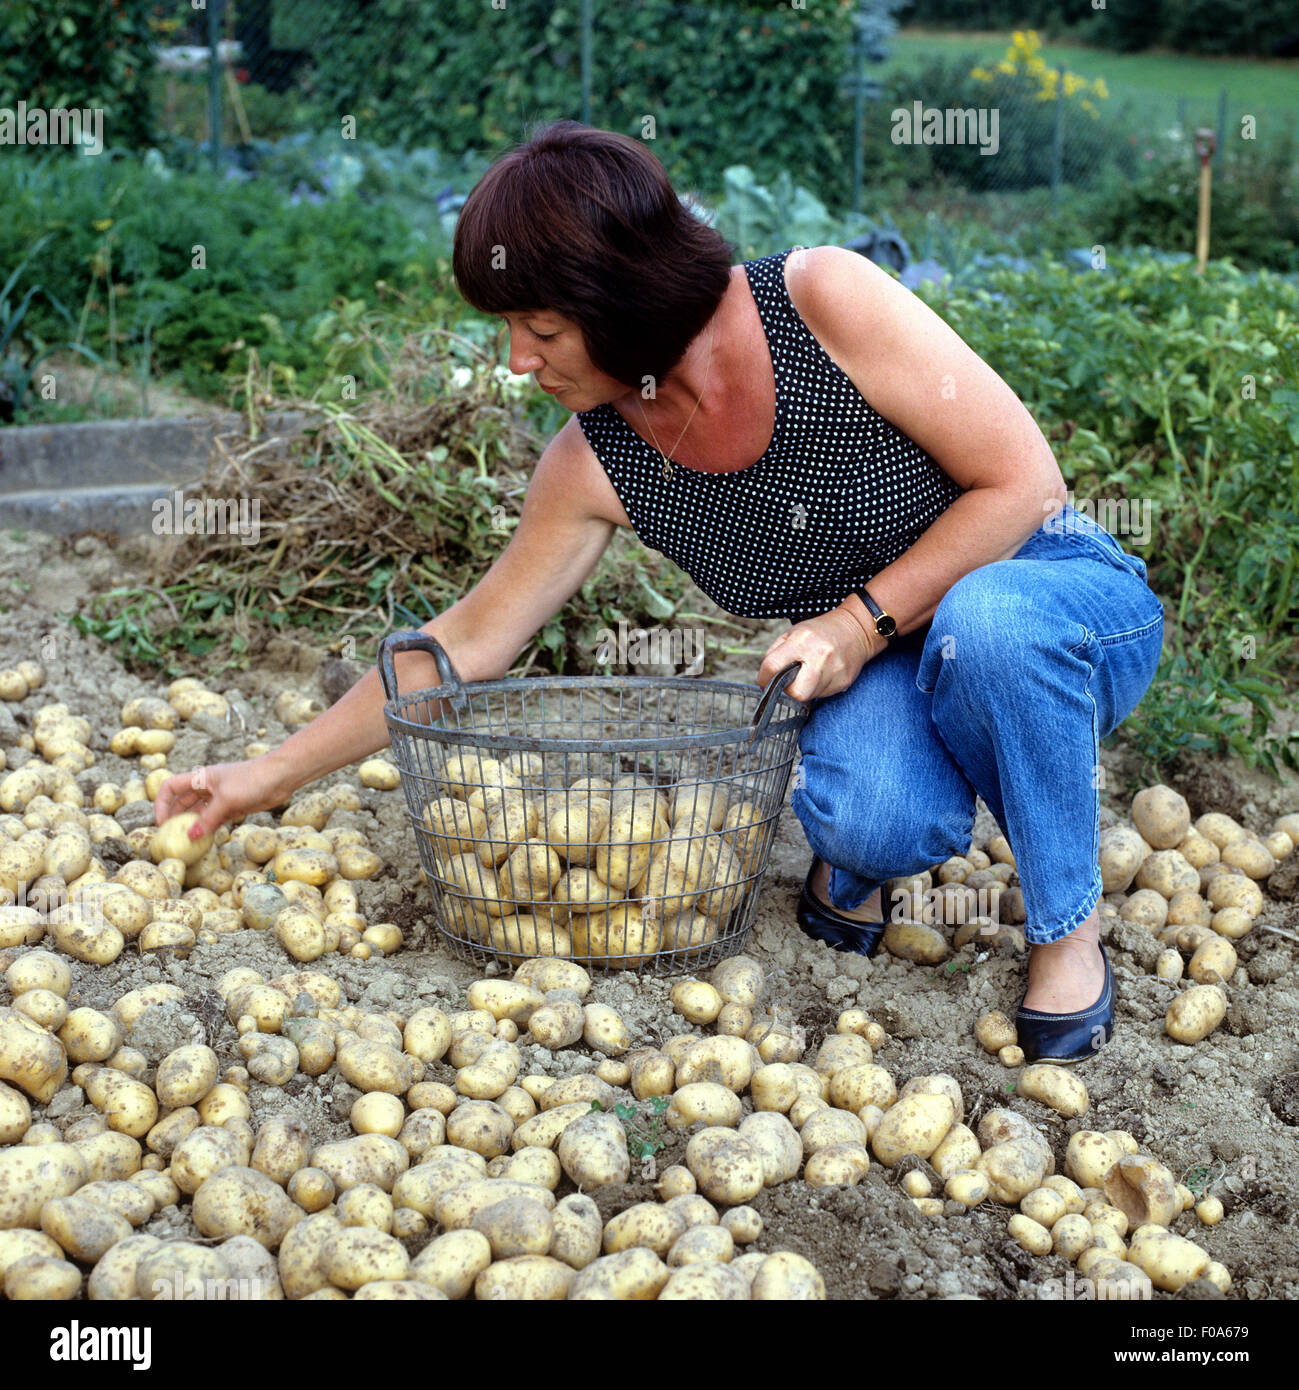 Kartoffelernte, kartoffeln, Gemueseernte; Stock Photo